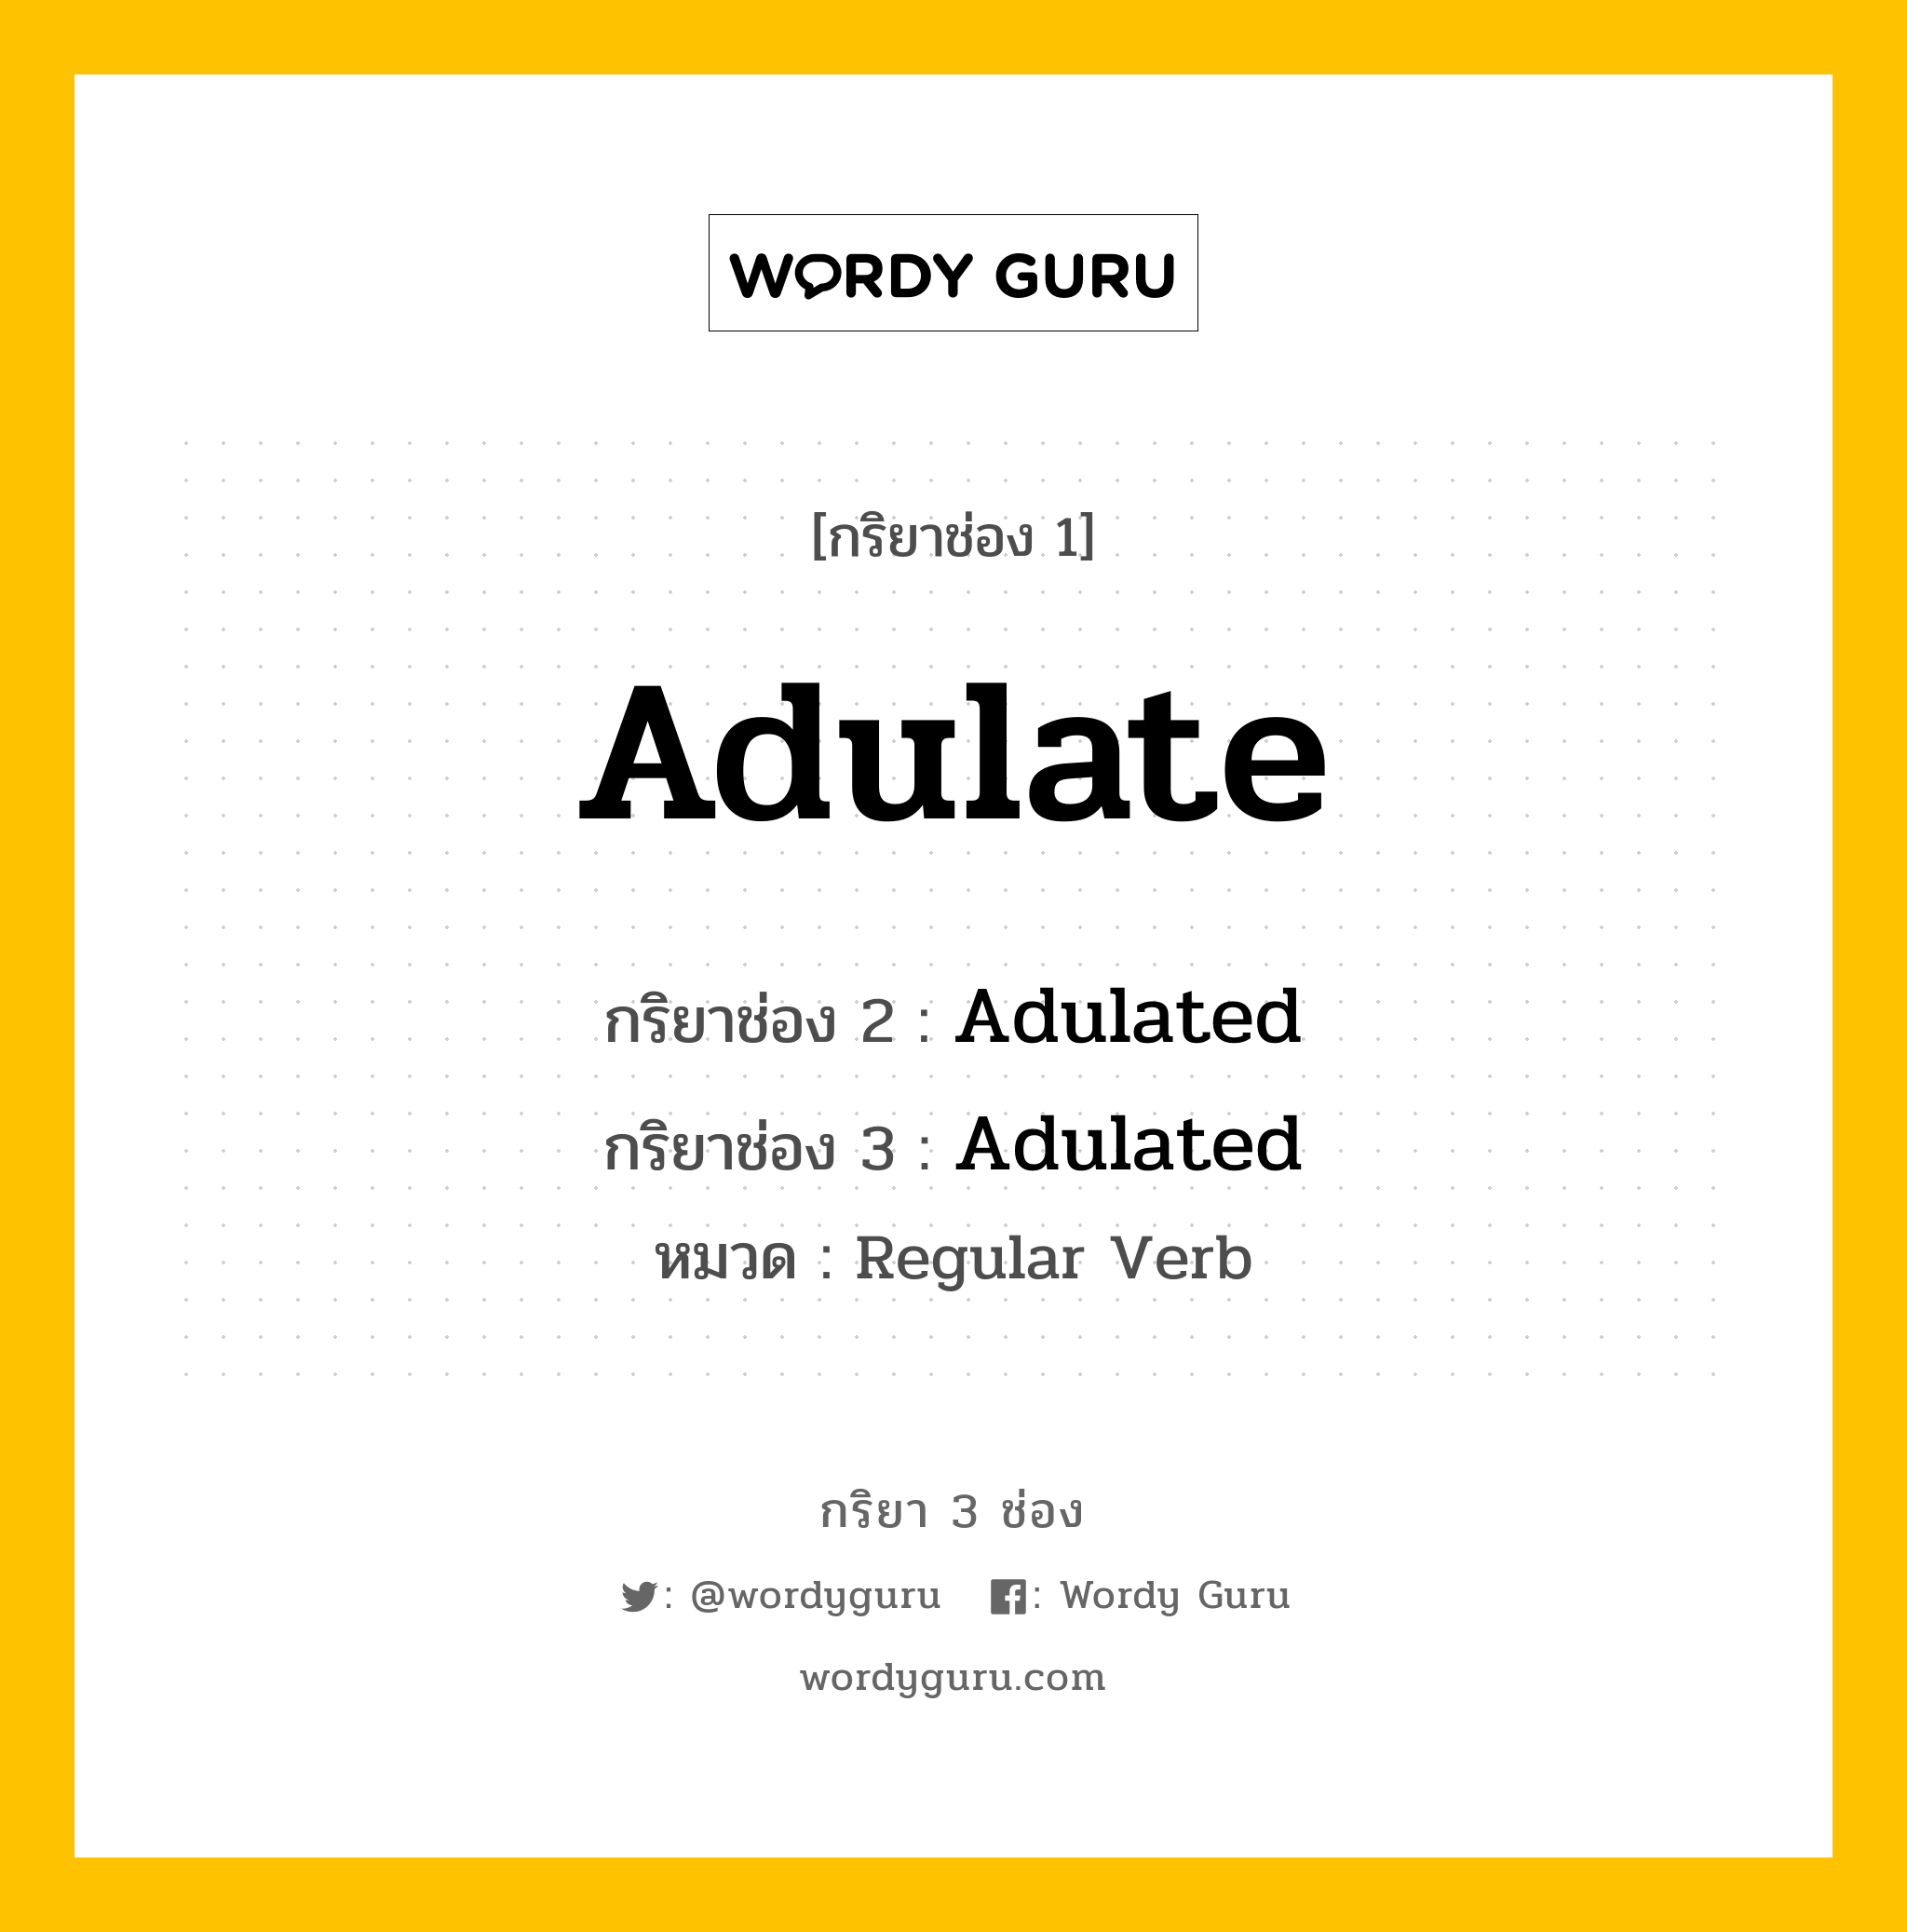 Adulate มีกริยา 3 ช่องอะไรบ้าง? คำศัพท์ในกลุ่มประเภท Regular Verb, กริยาช่อง 1 Adulate กริยาช่อง 2 Adulated กริยาช่อง 3 Adulated หมวด Regular Verb หมวด Regular Verb